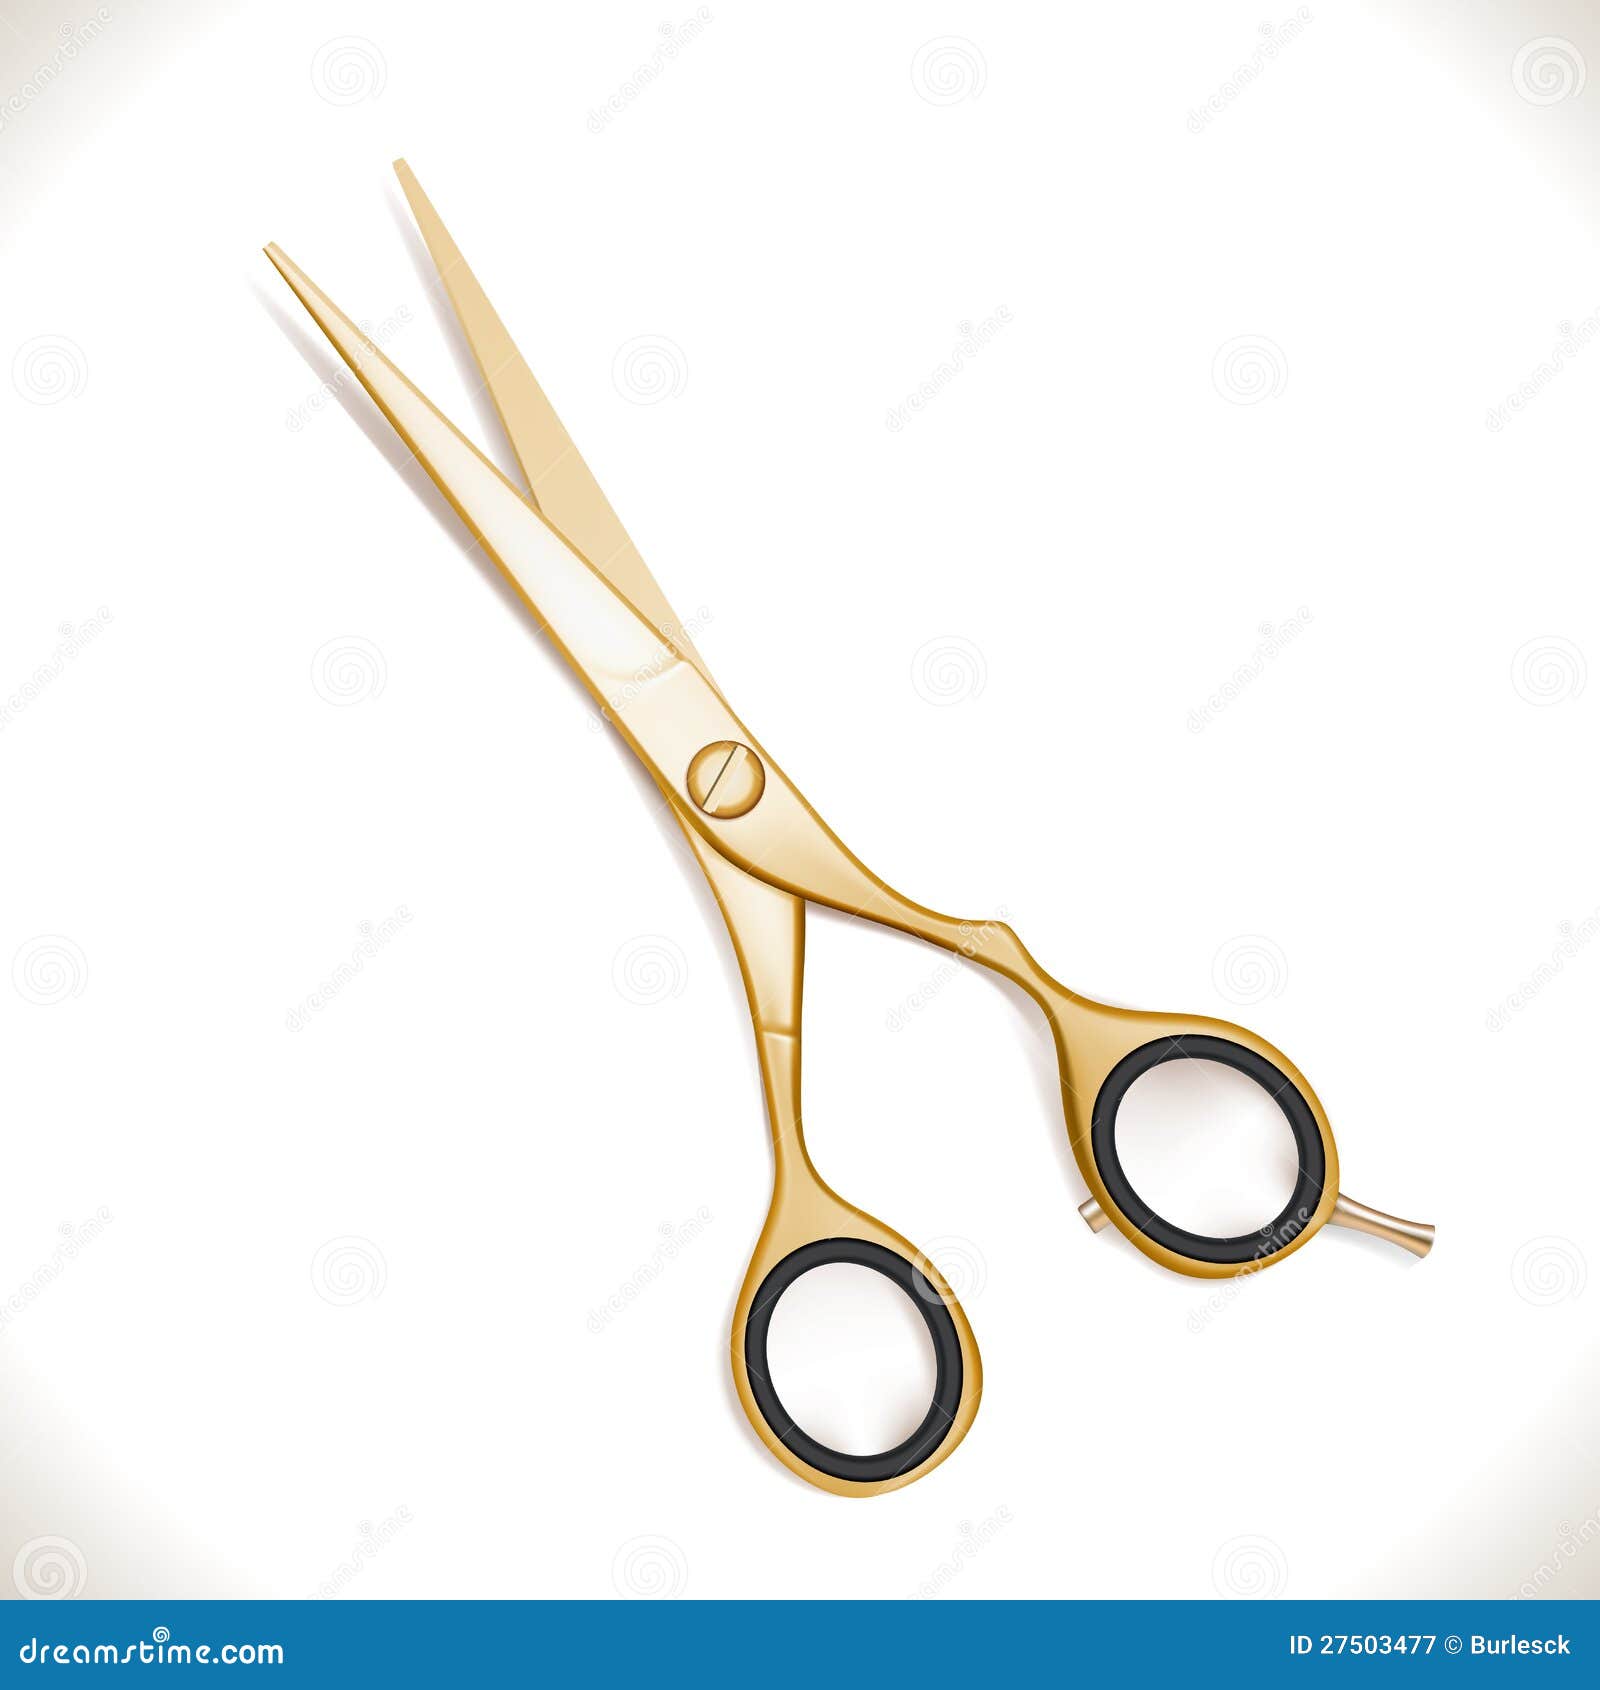 golden scissors